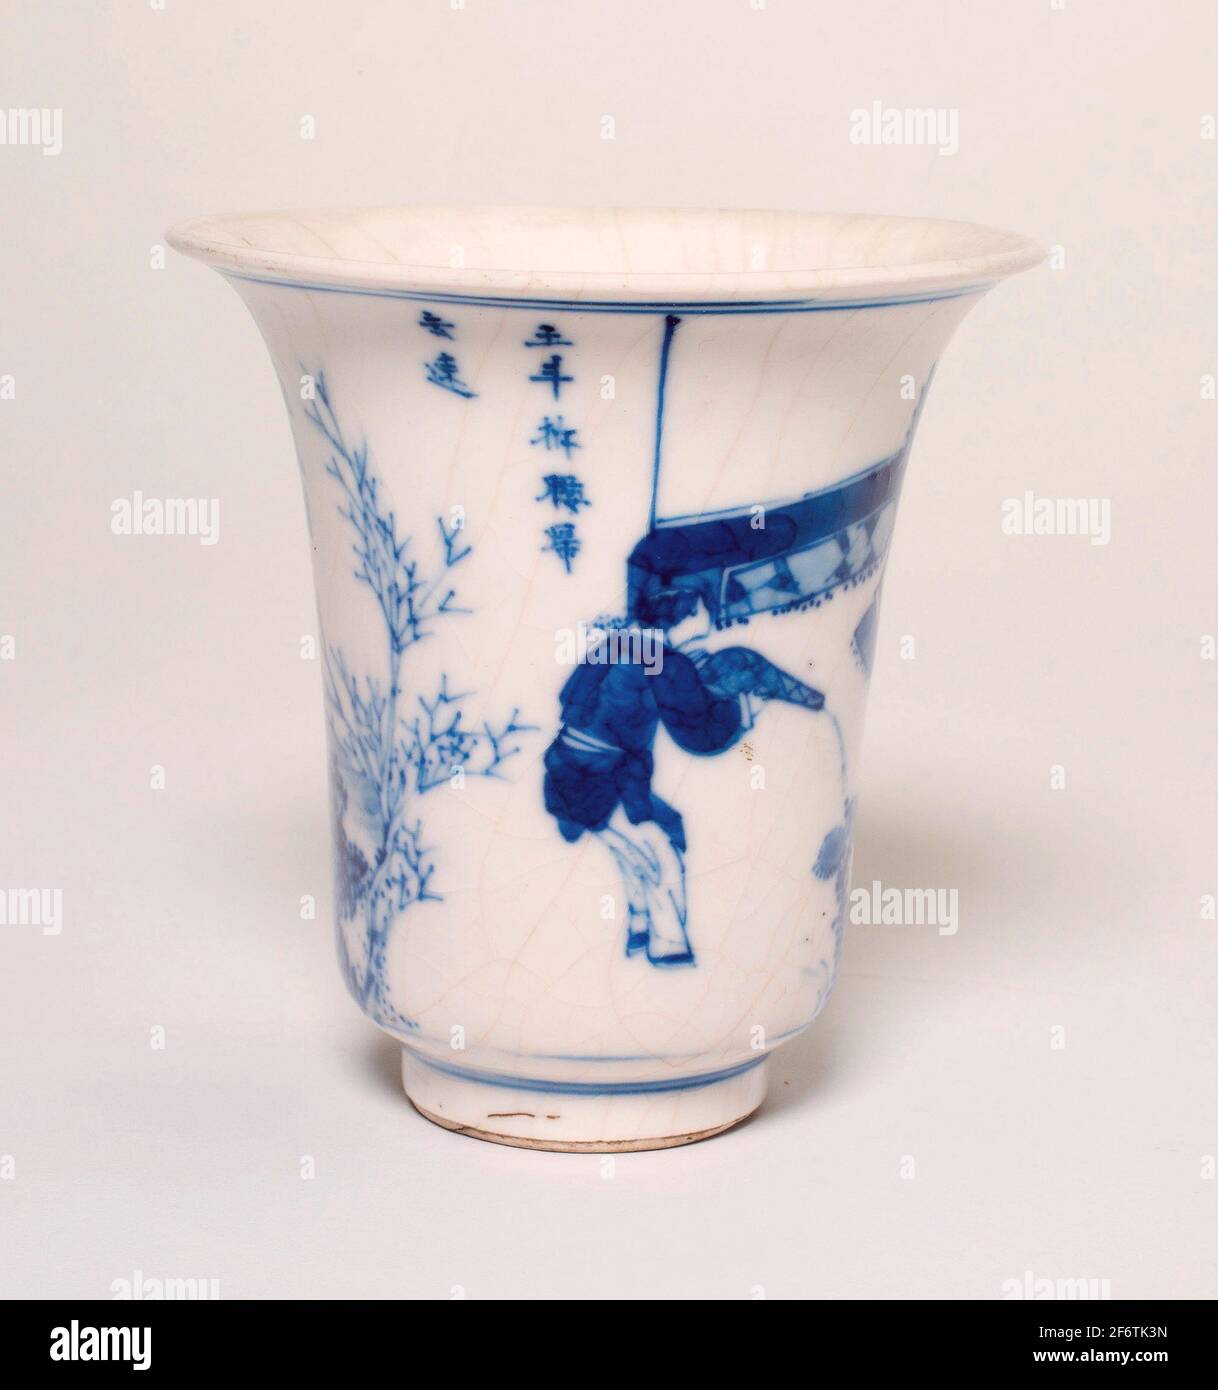 Coupe en forme de cloche avec Scholar et Attendants dans un jardin - dynastie Qing (1644 - 1911) - Chine. Porcelaine peinte en bleu underglaze. Banque D'Images